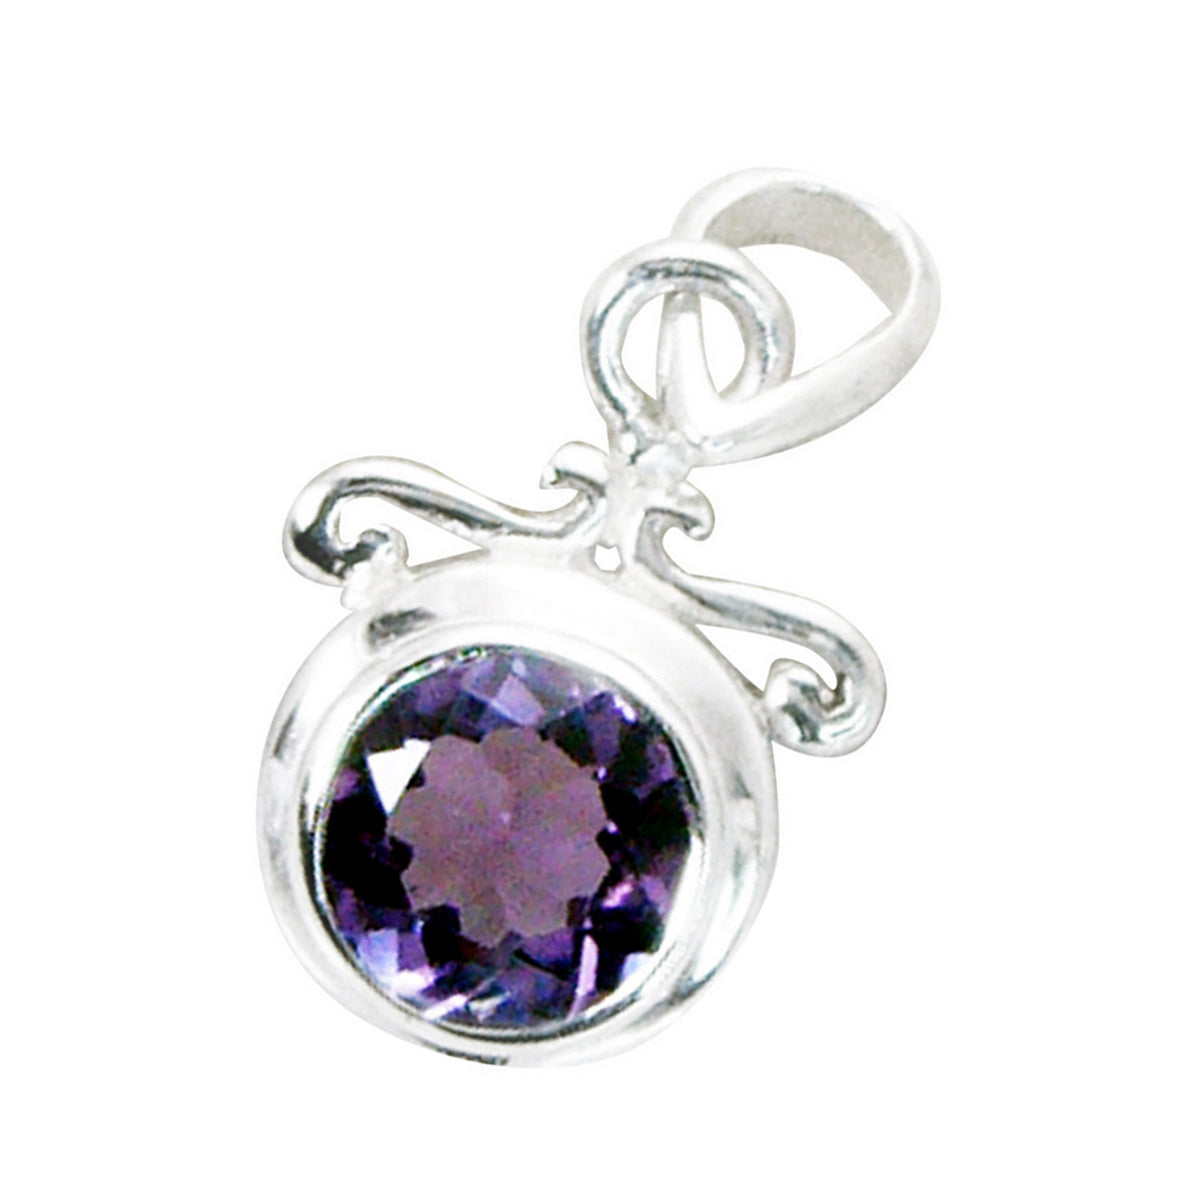 Preciosa piedra preciosa riyo, amatista púrpura facetada redonda, colgante de plata de ley 953, regalo para cumpleaños